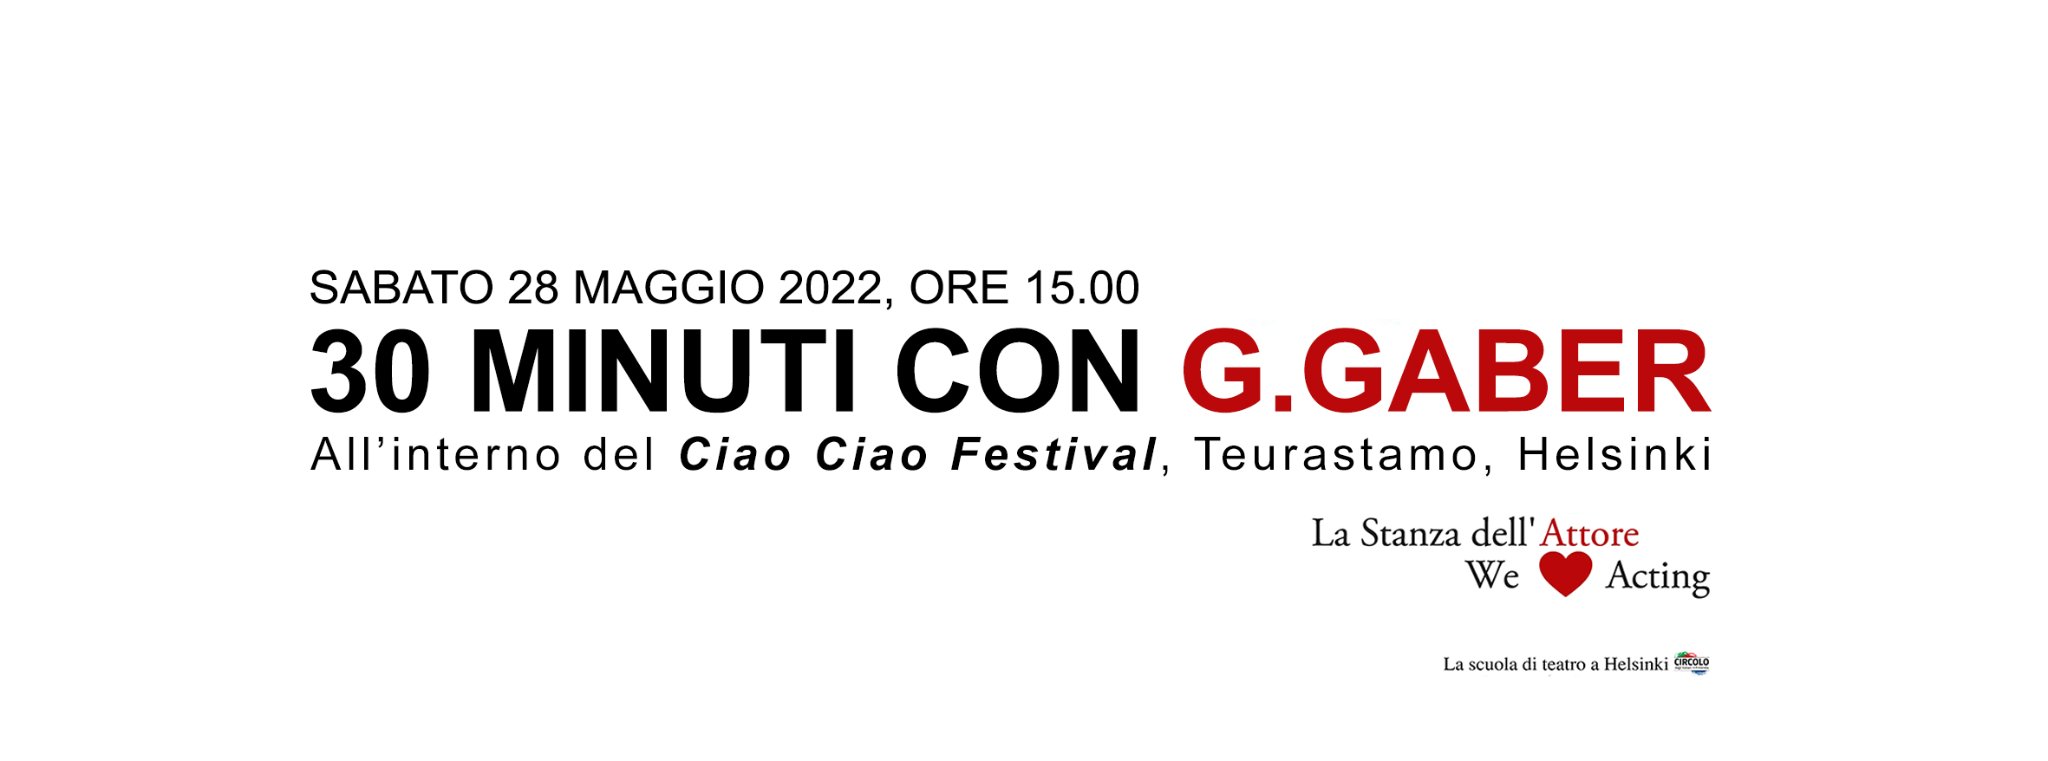 Al “Ciao Ciao” Festival : 30 minuti con il signor G.